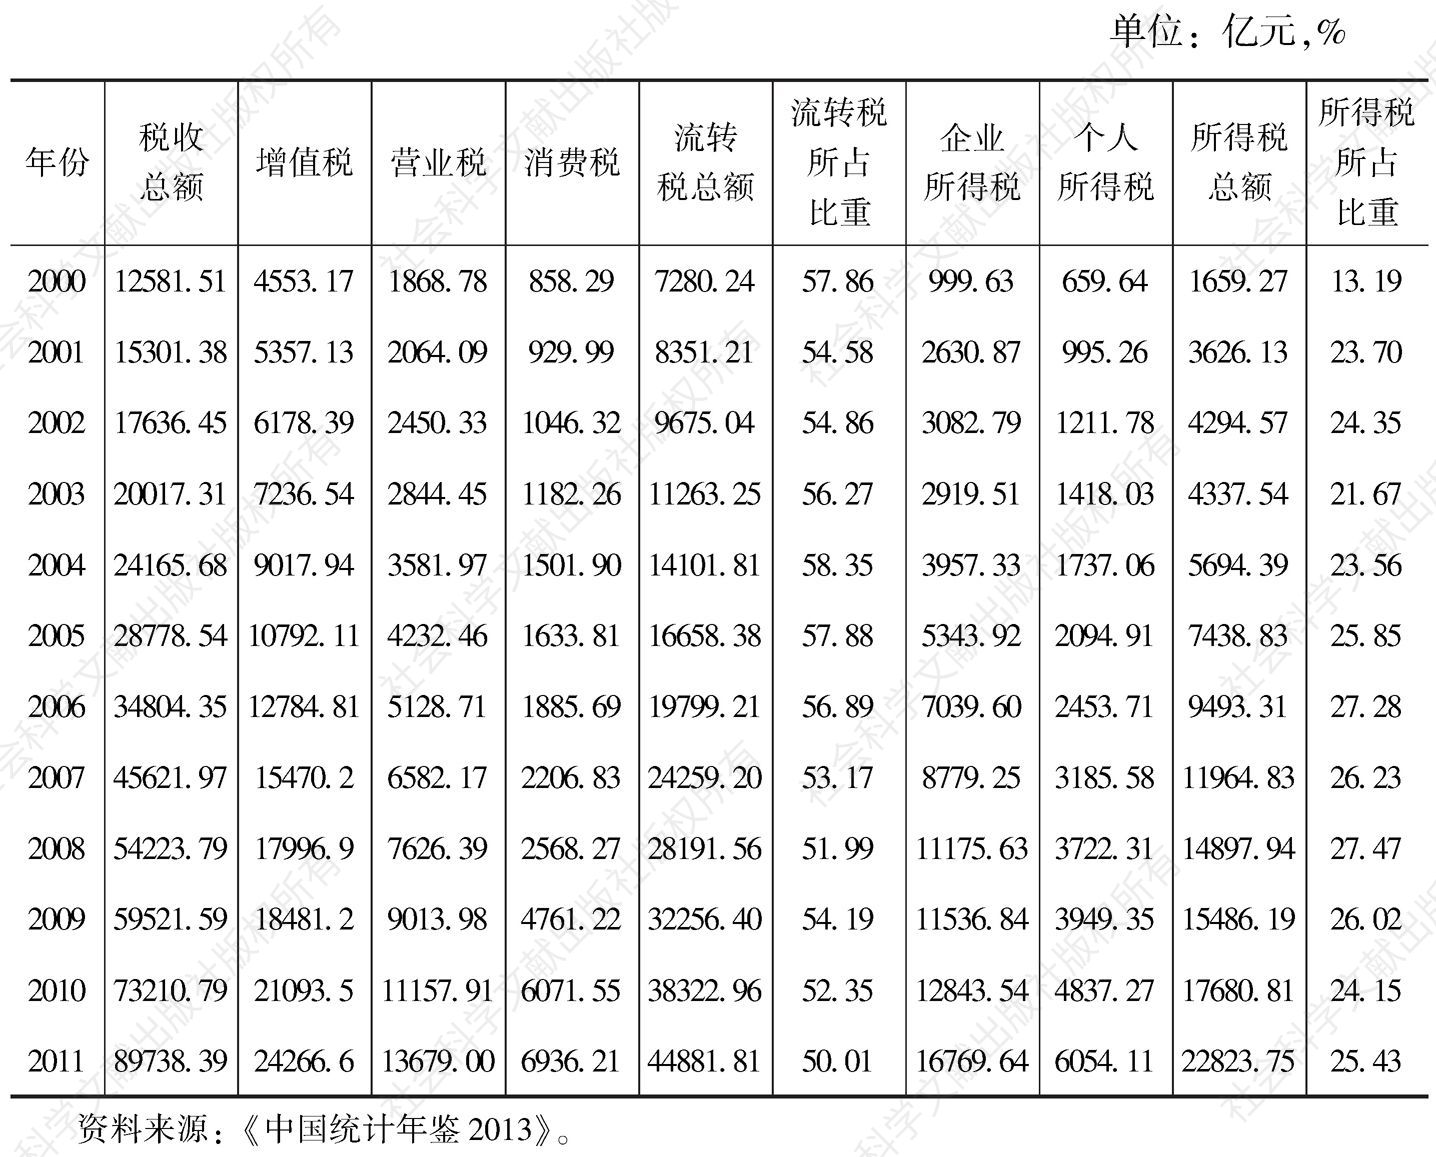 表1 中国主体税种结构概况